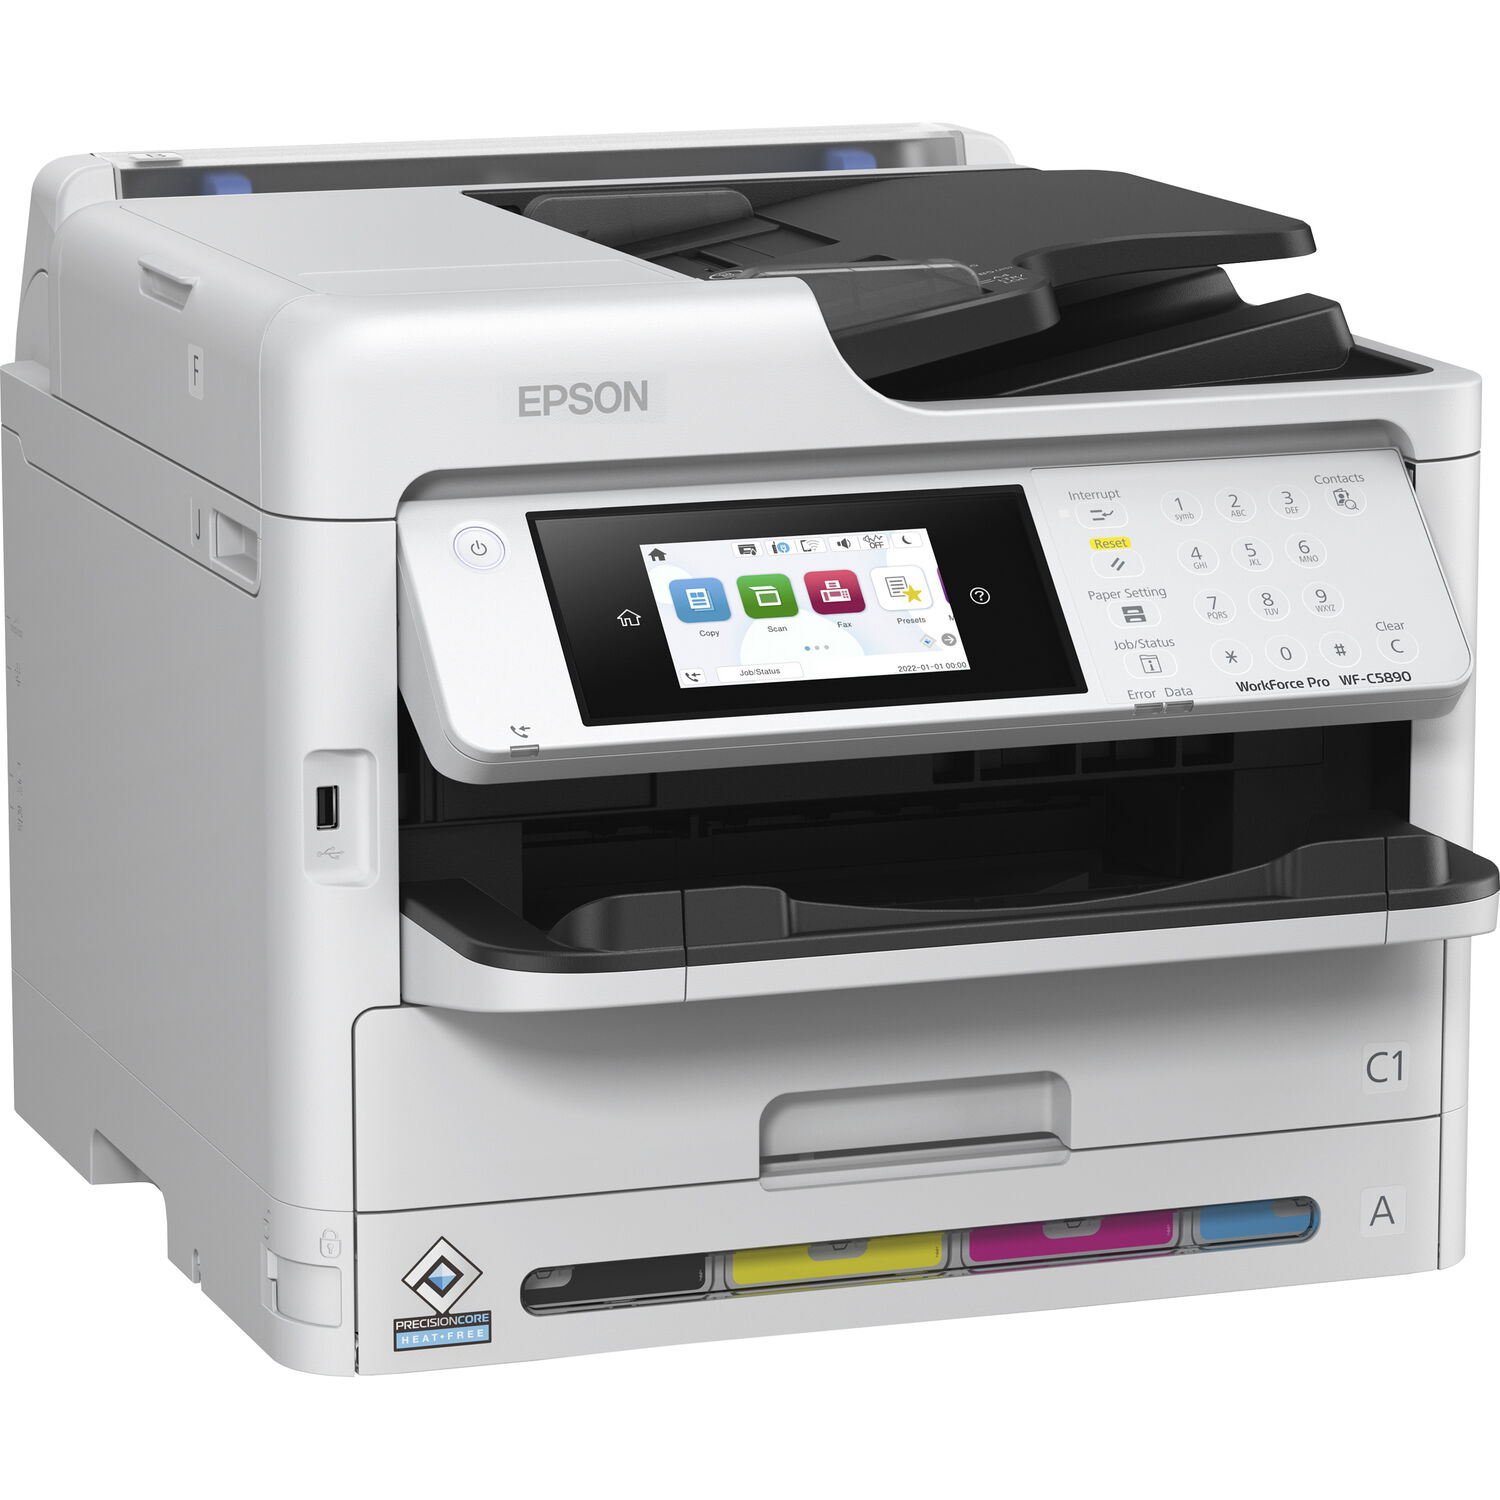 Impresora de Inyección de Tinta a Color Epson Workforce Pro Wf C5890 con Conexión Inalámbrica